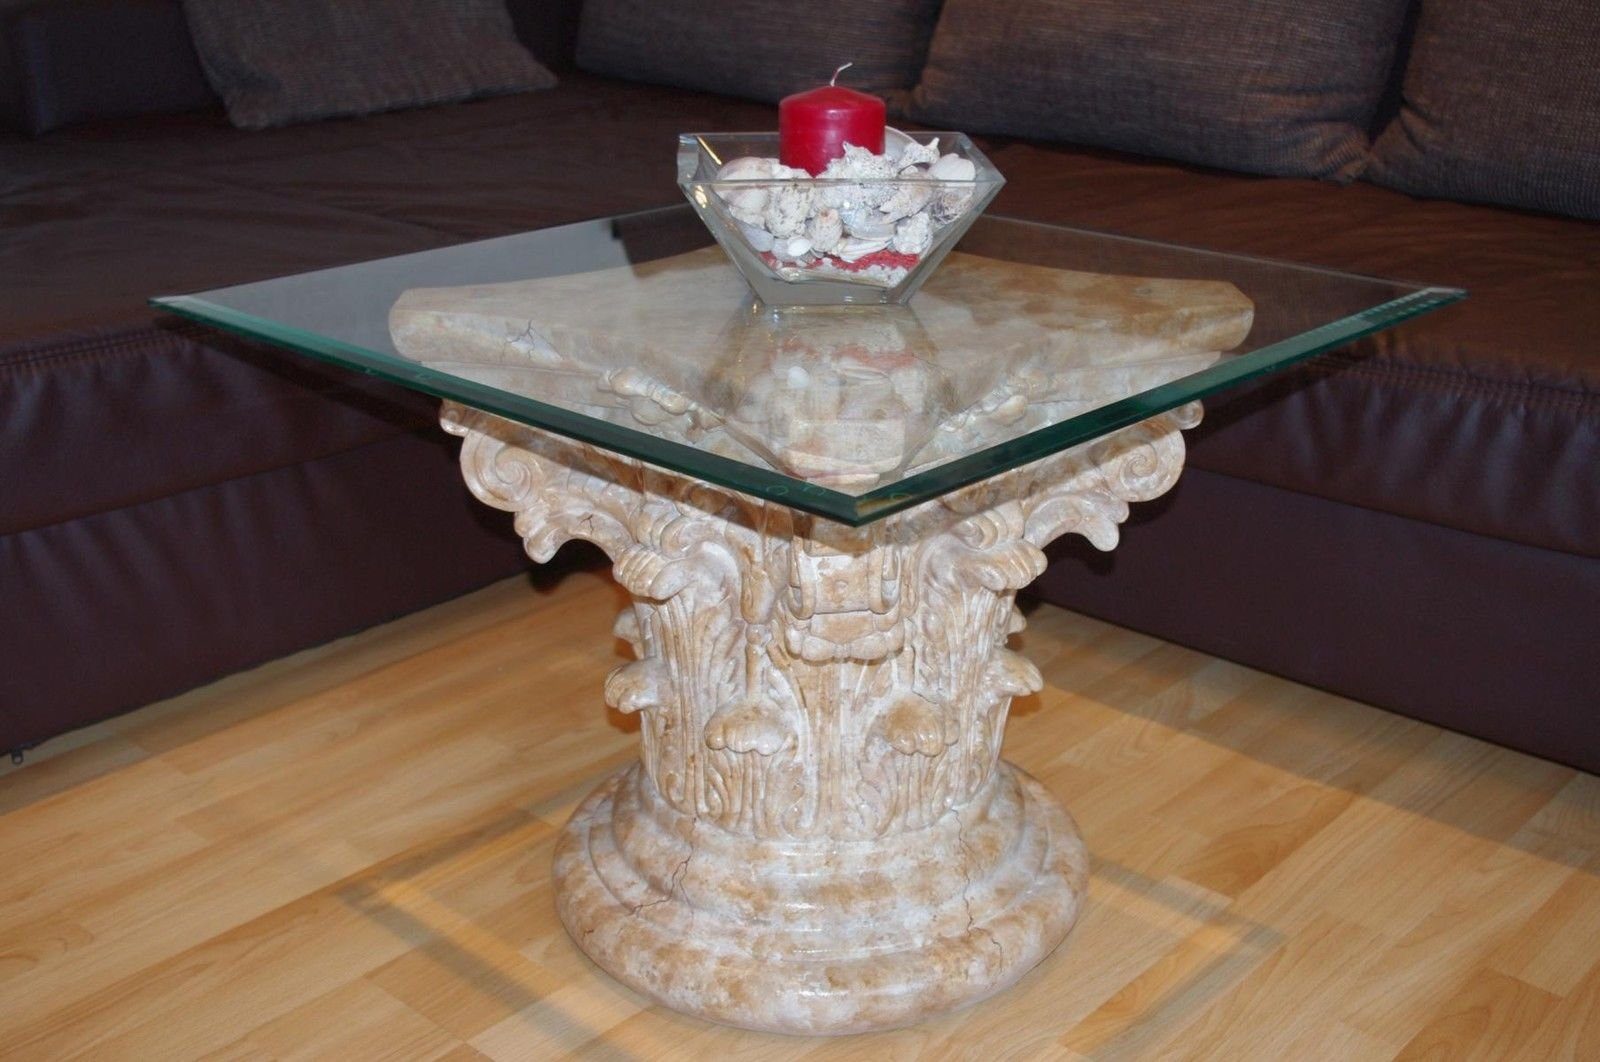 Antikes Wohndesign Couchtisch Marmortisch Couchtisch Beistelltisch Wohnzimmertisch Glastisch 70cm x